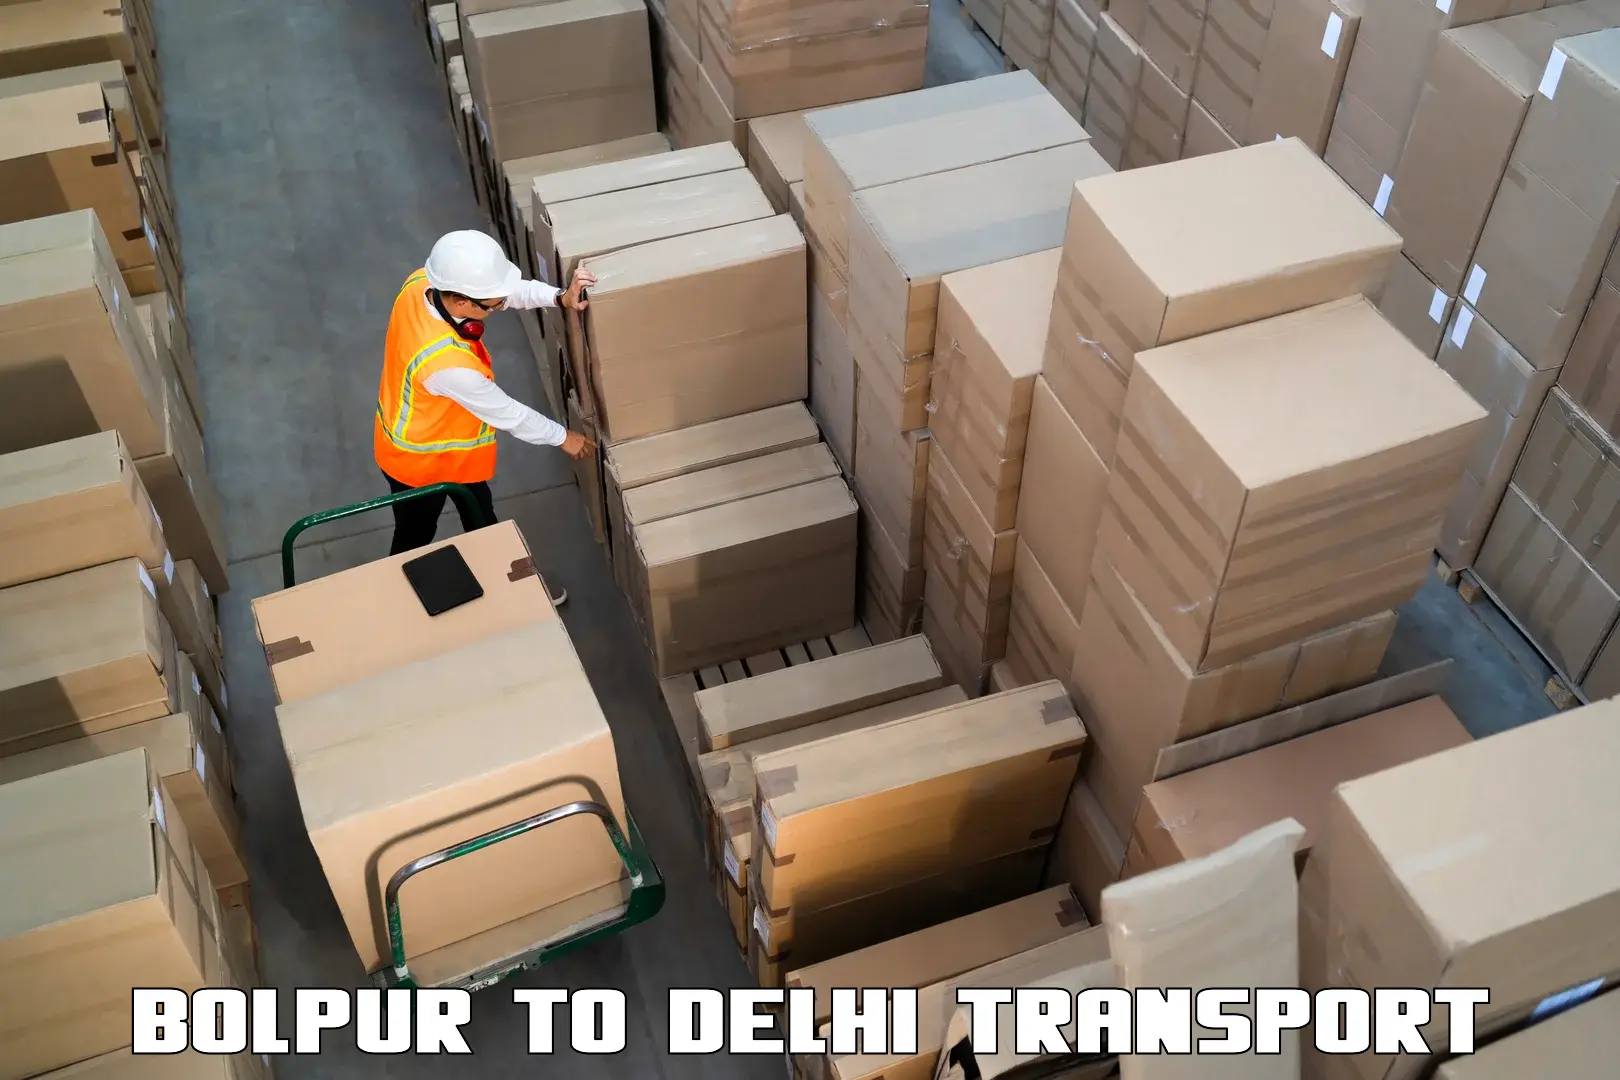 Daily transport service Bolpur to University of Delhi